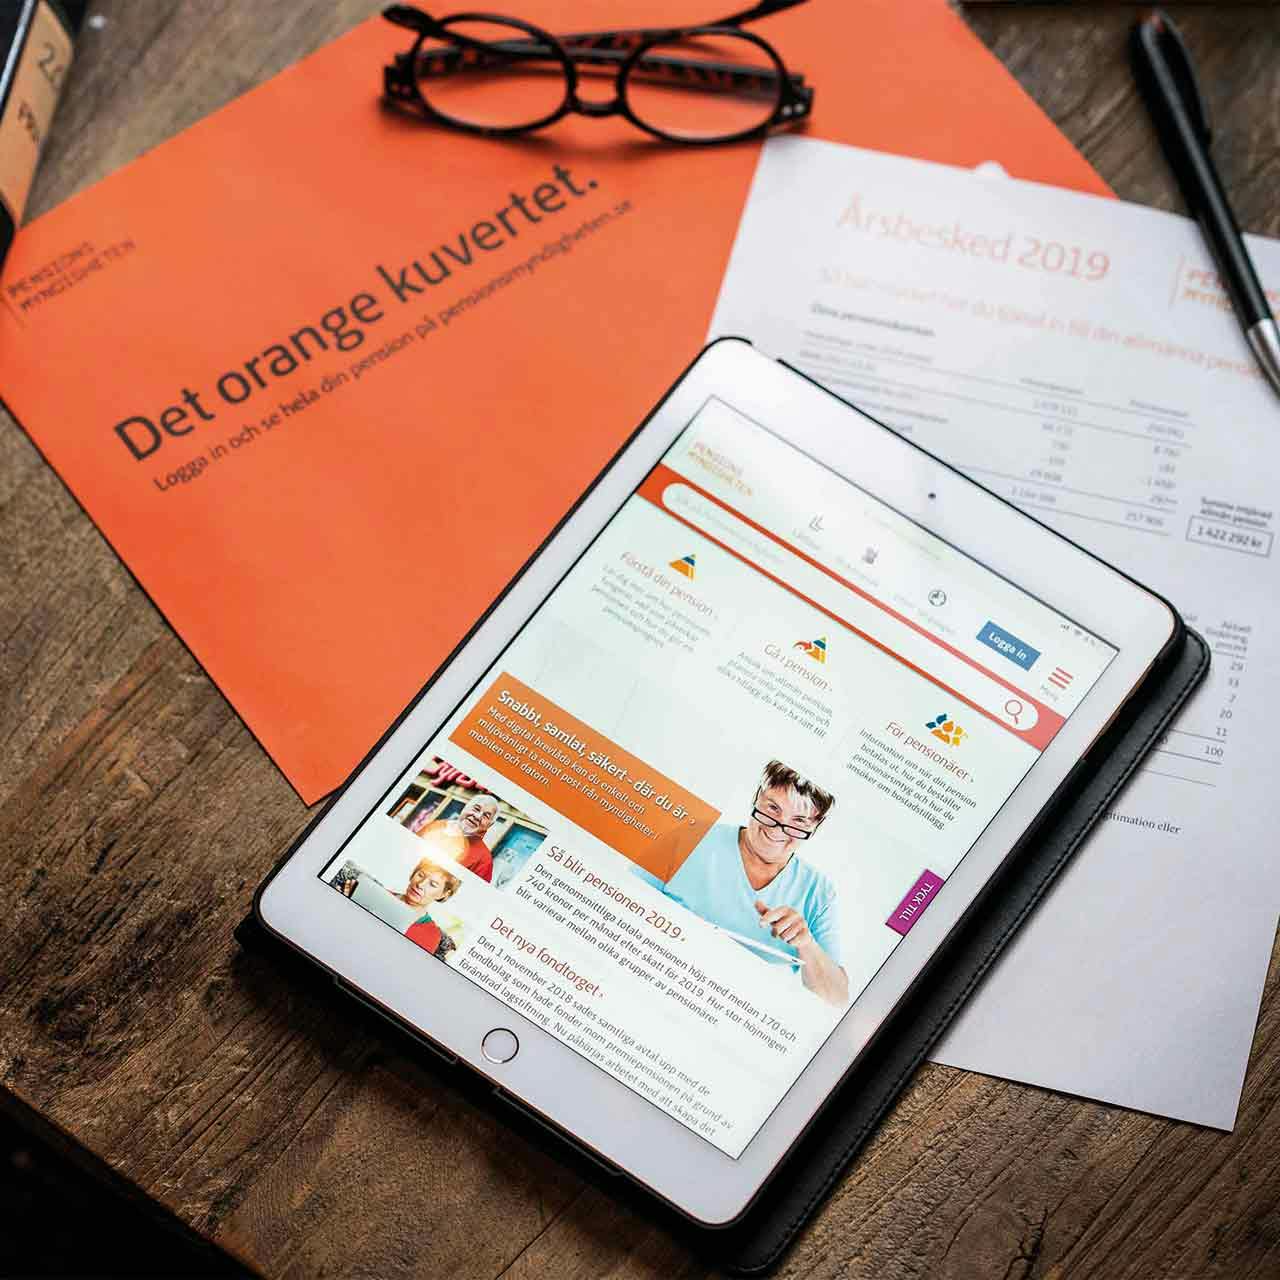 Pensionsmyndighetens hemsida "Det orange kuvertet" som visas på en Ipad